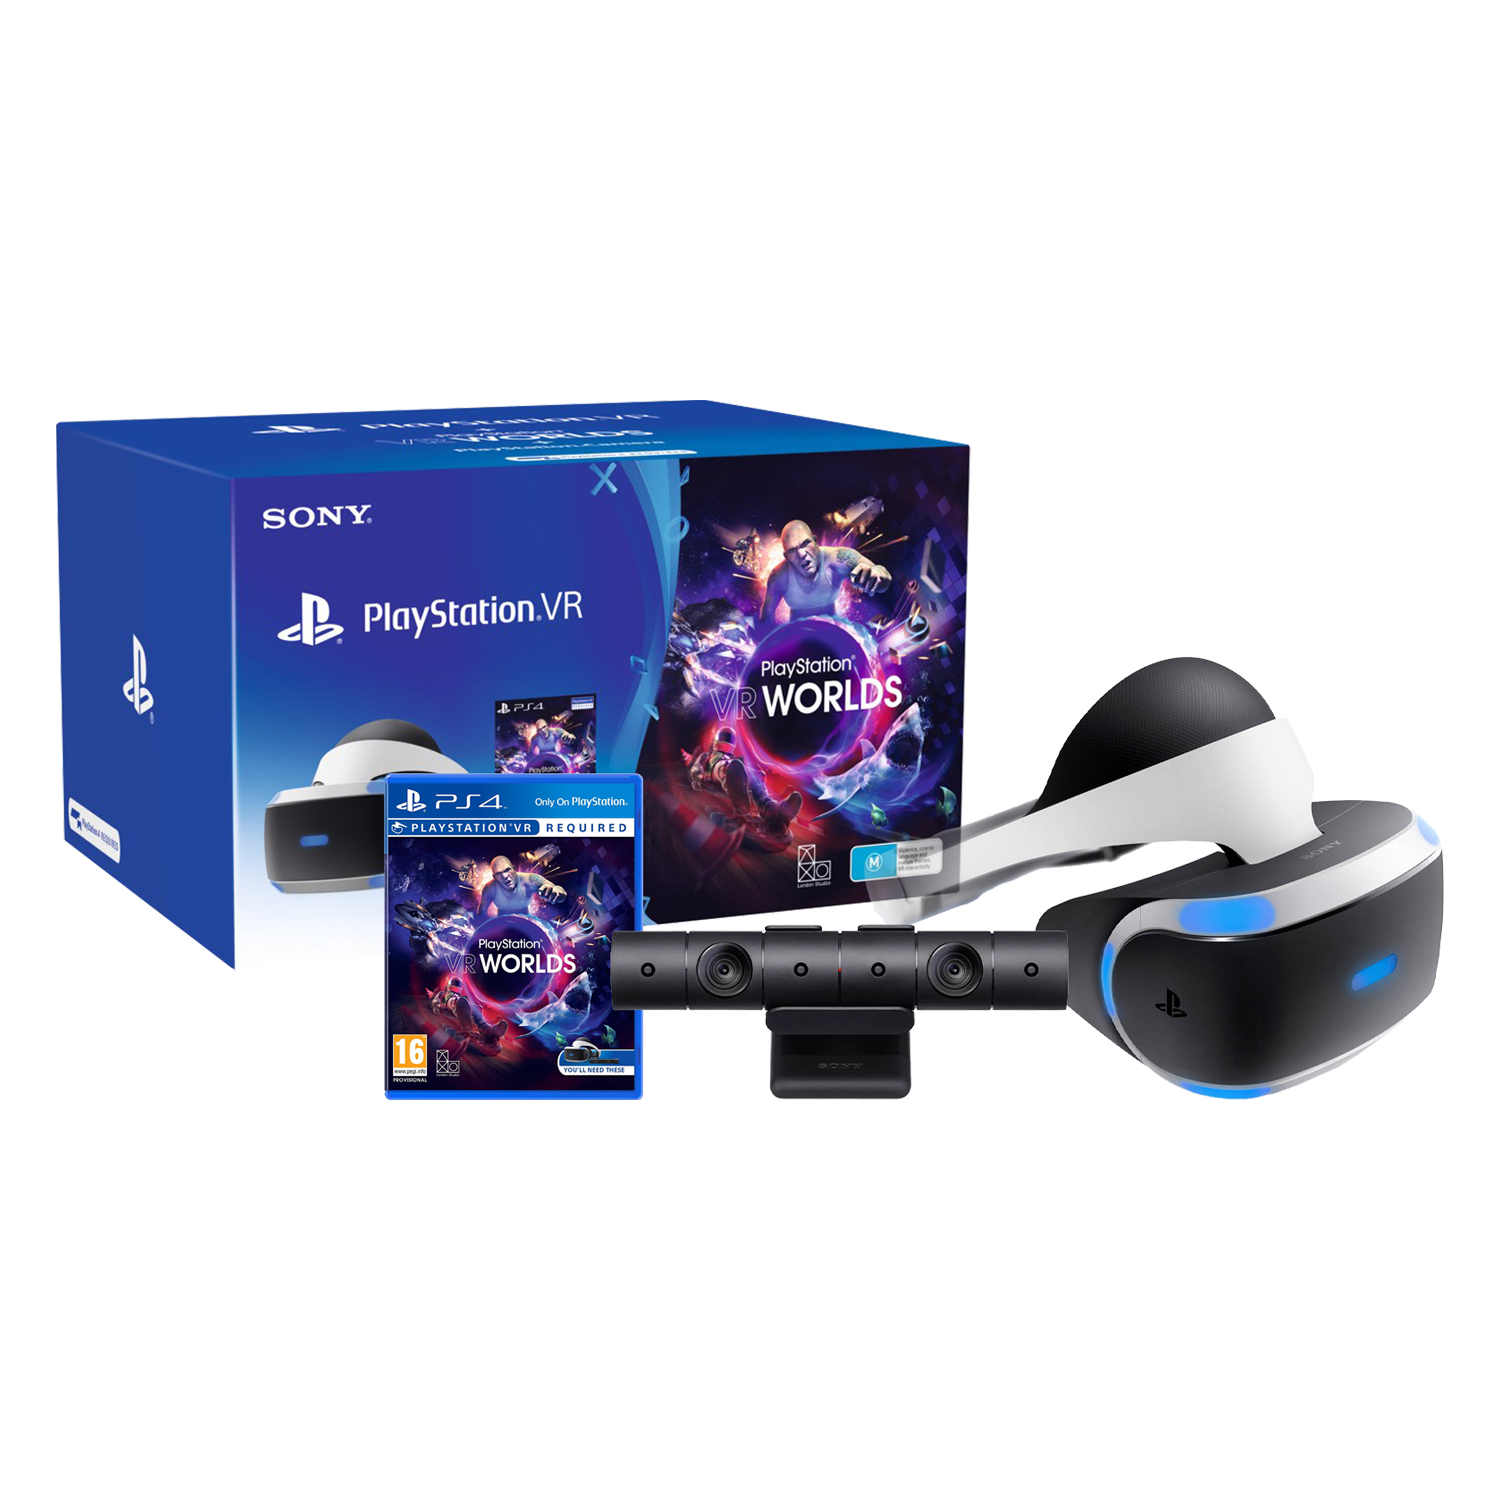 Óculos de Realidade Virtual PlayStation VR / Câmera / VR Worlds - CUH-ZVR2  (Sem Garantia) no Paraguai - Atacado Games - Paraguay